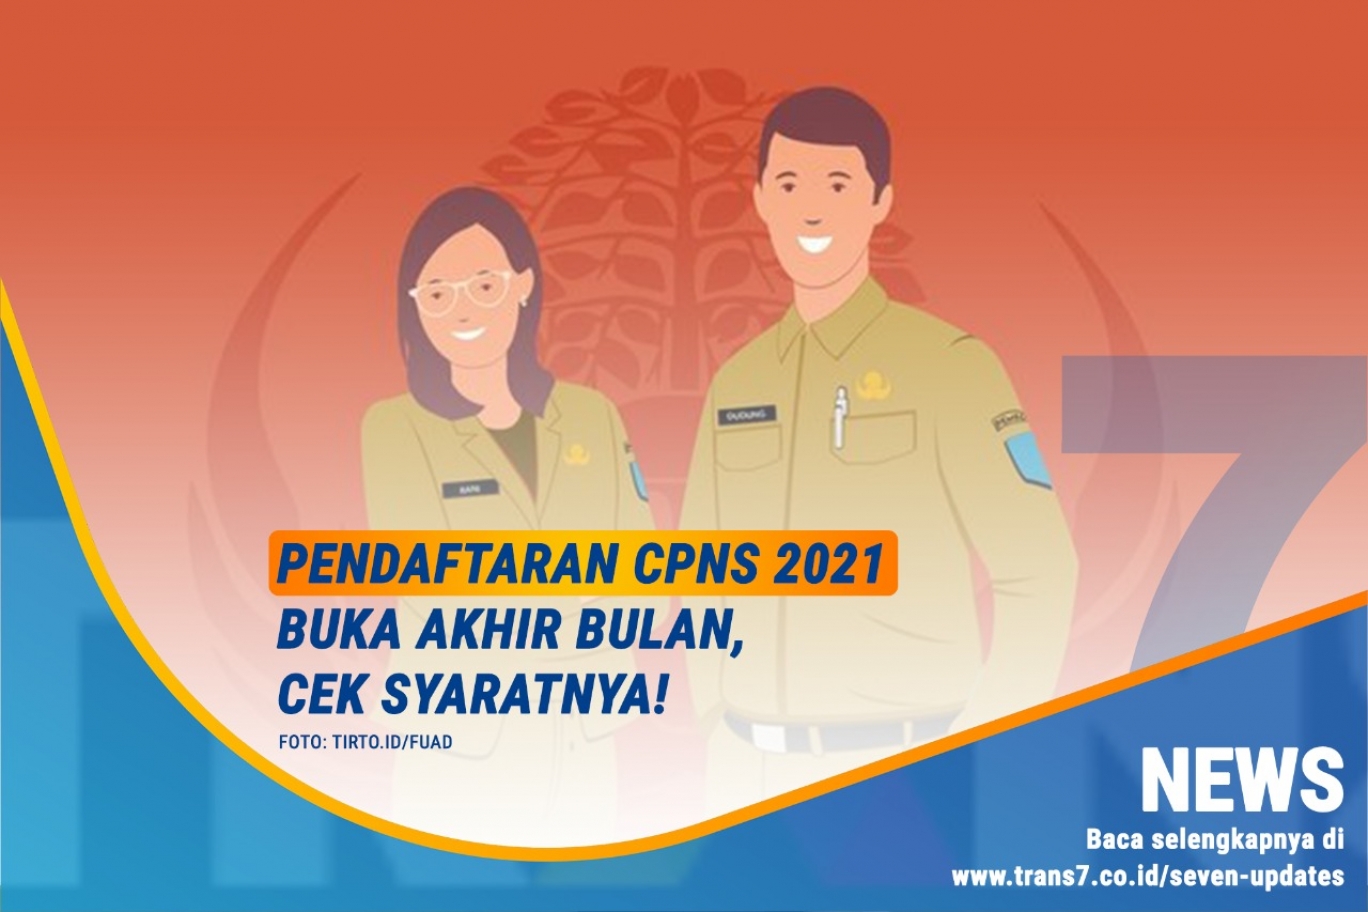 TRANS7 | Pendaftaran CPNS 2021 Buka Akhir Bulan, Cek Syaratnya!